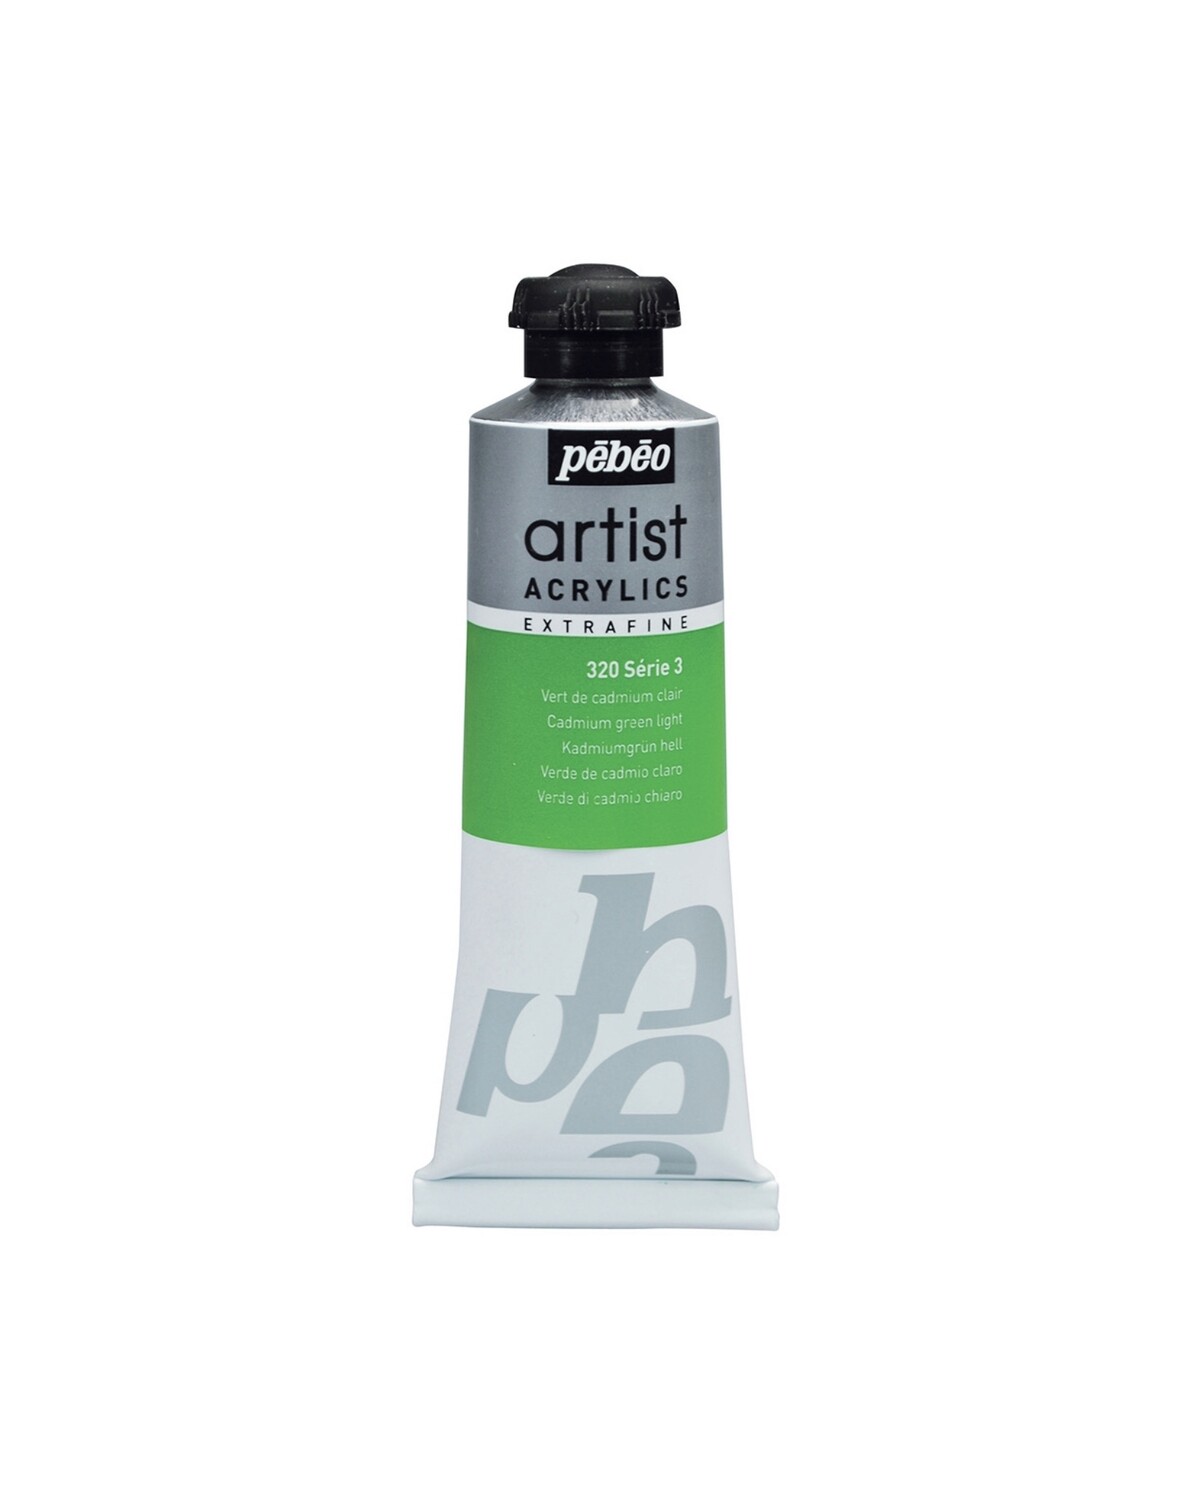 EXTRA FINE ARTIST ACRYLICS, Light cadmium green, No. 320, Series 3, 60 ml